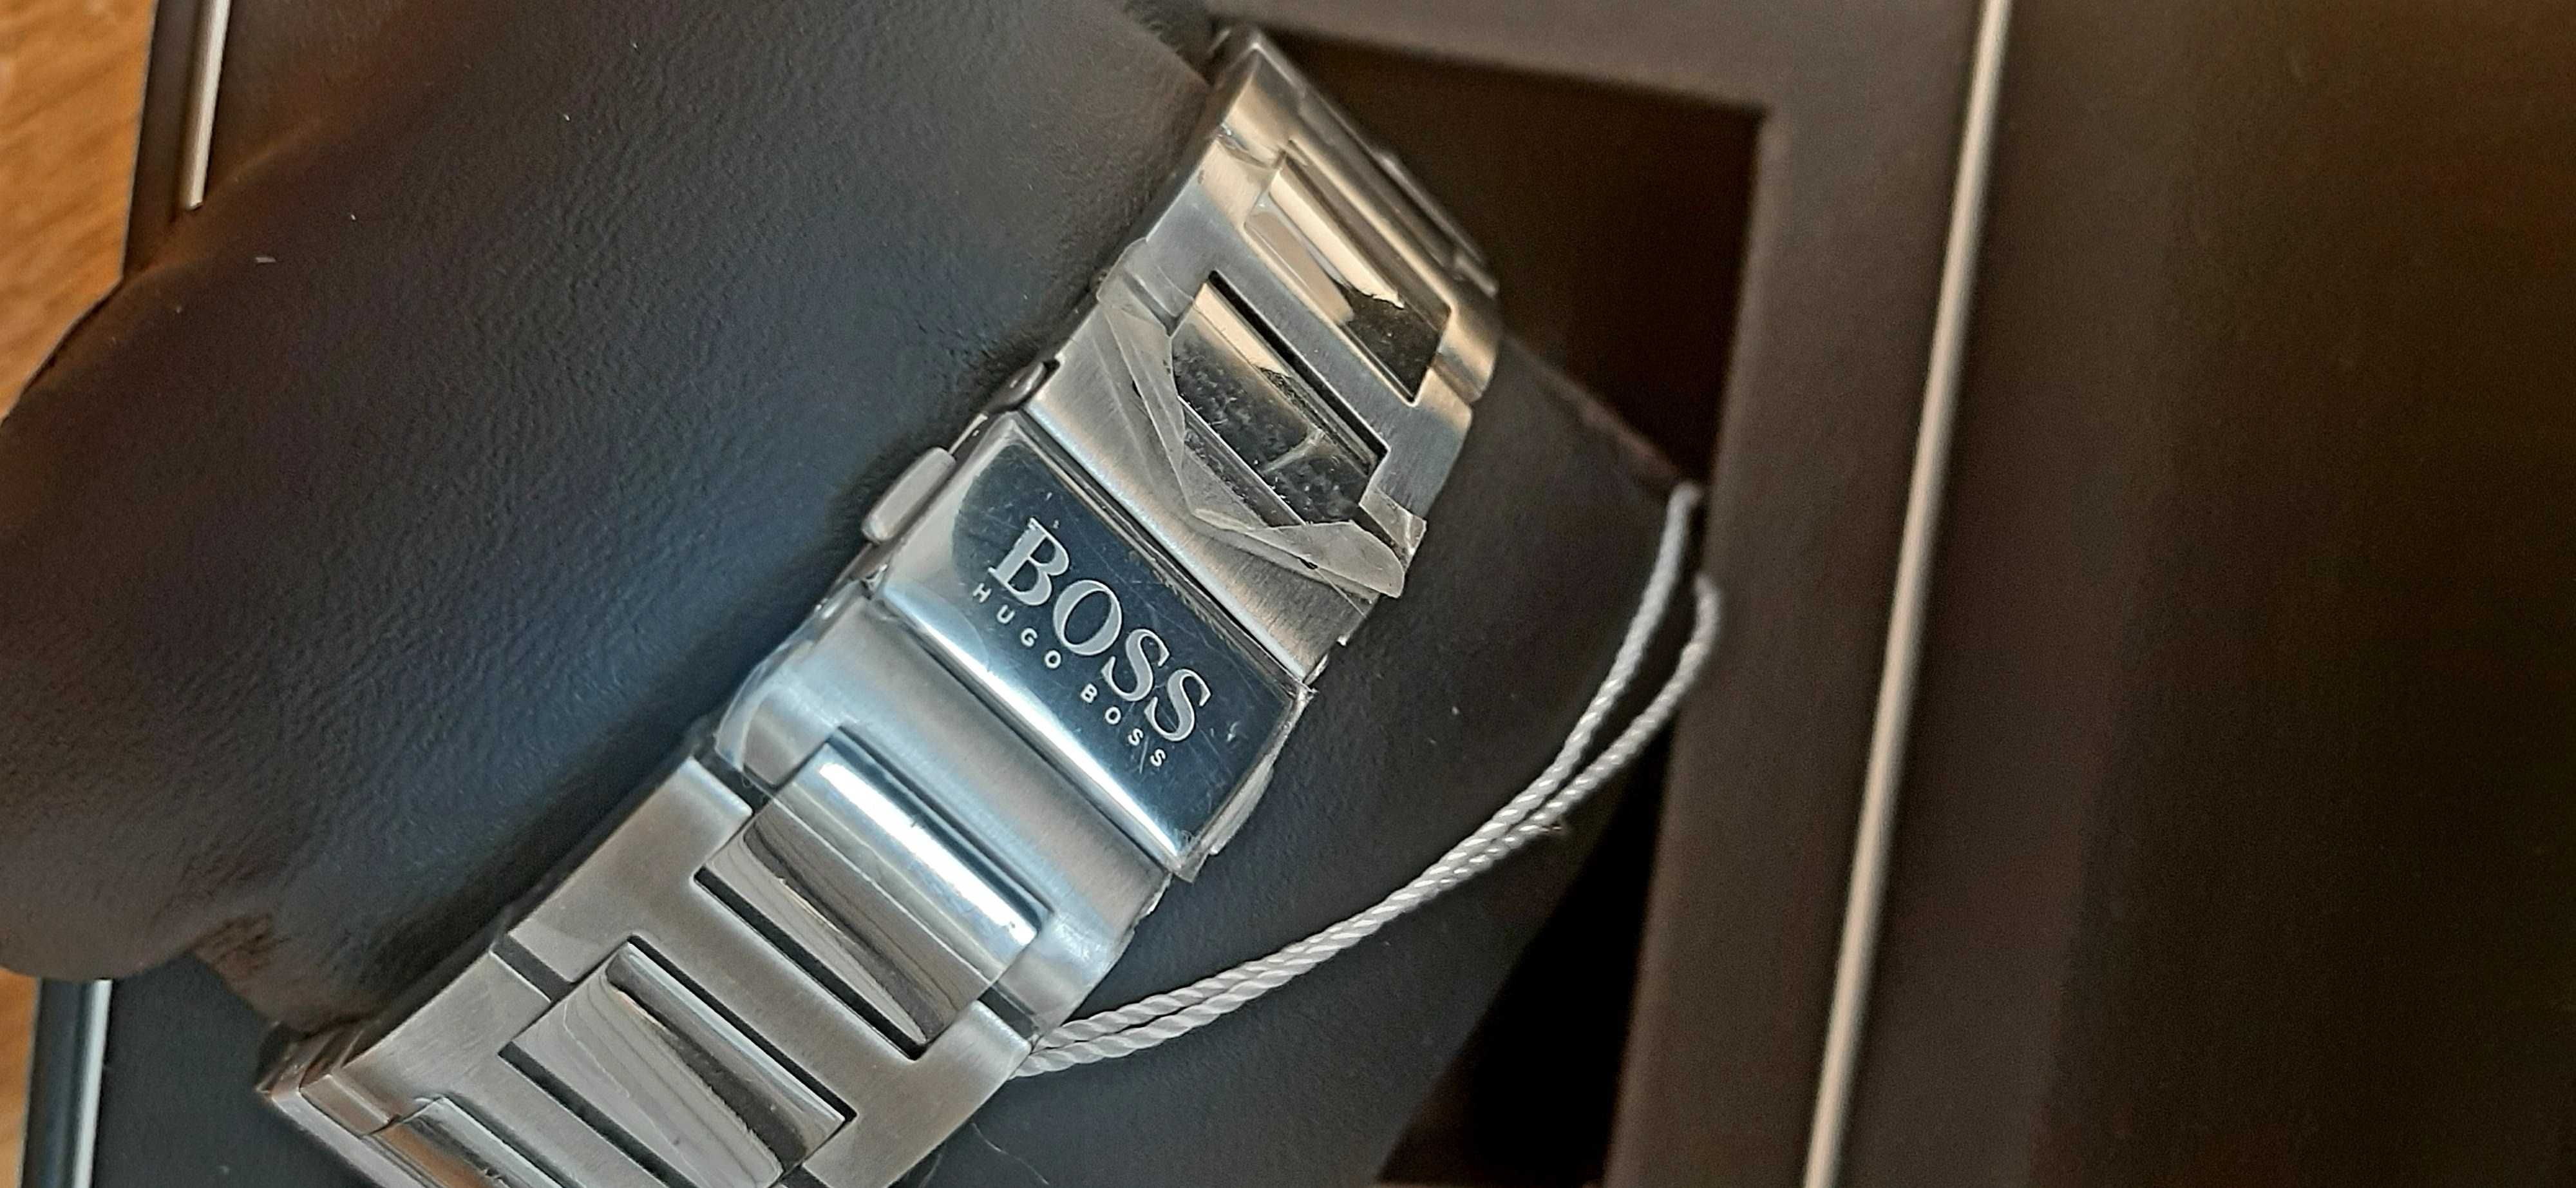 Oportunidade - Relógio Hugo Boss Pioneer * Novo por abrir *